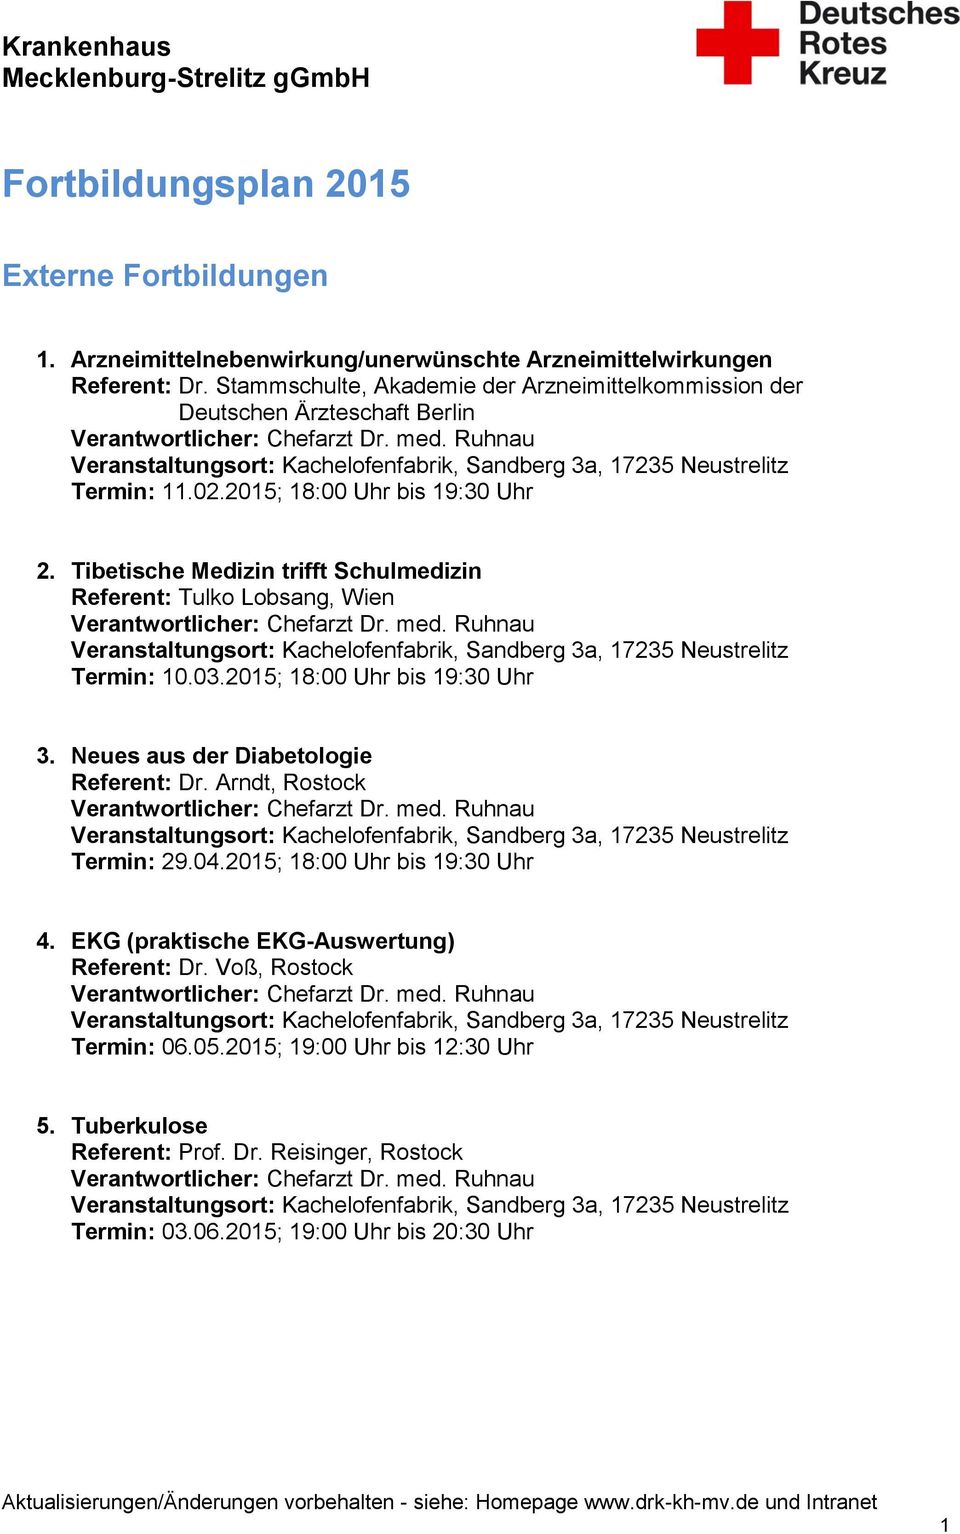 Tibetische Medizin trifft Schulmedizin Referent: Tulko Lobsang, Wien Termin: 10.03.2015; 18:00 Uhr bis 19:30 Uhr 3. Neues aus der Diabetologie Referent: Dr.